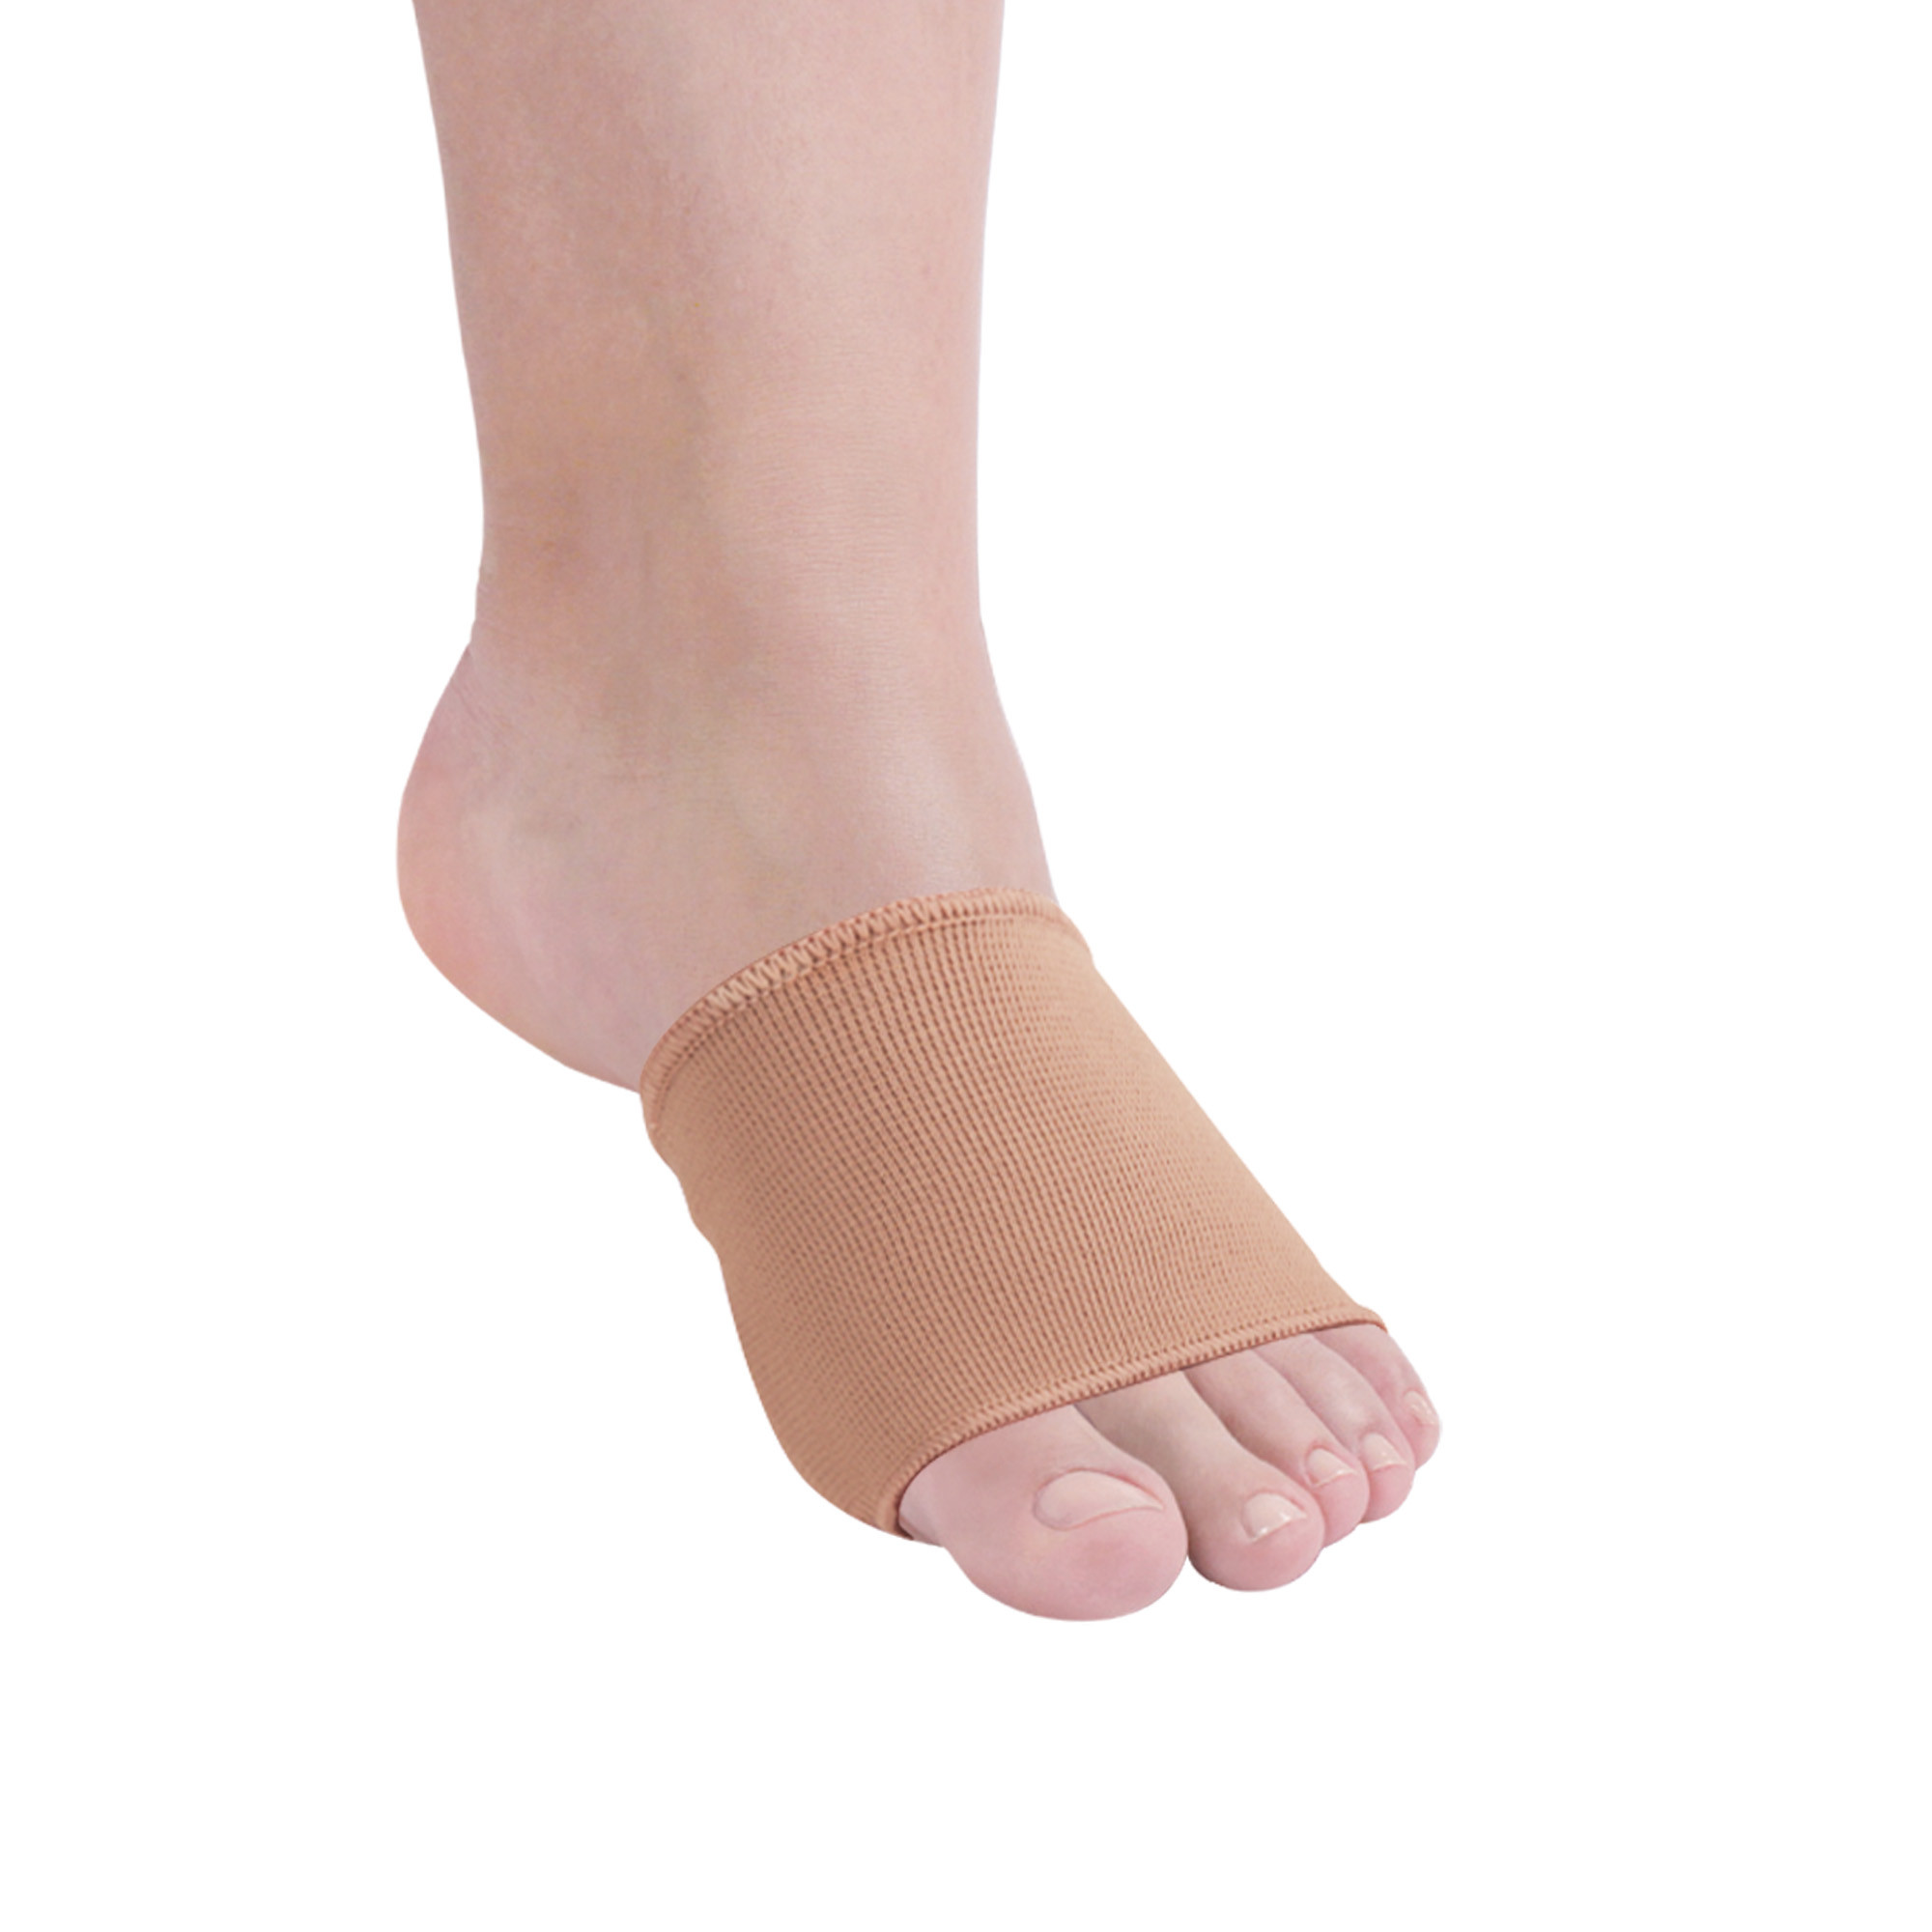 Metatarsalband für Füße aus elastischem Textil-Gewebe und Tecniwork Polymer Gel Größe Large 1 Stk.